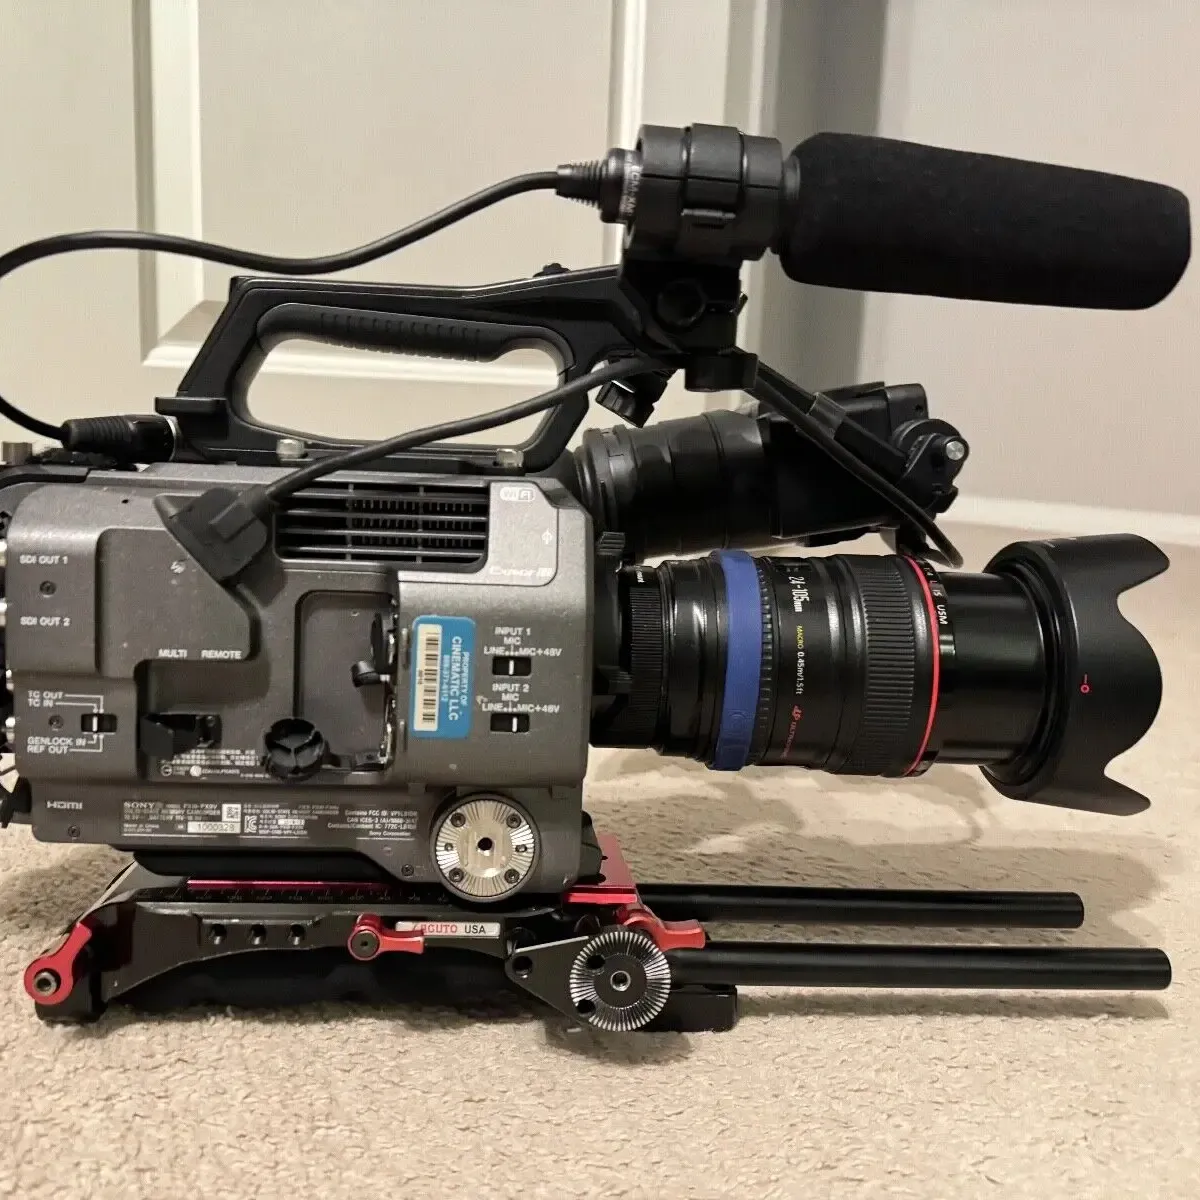 Nuovissimo PXW-FX9 originale XDCAM 6K Full-Frame videocamera sistema Camcorder e 2 obiettivi